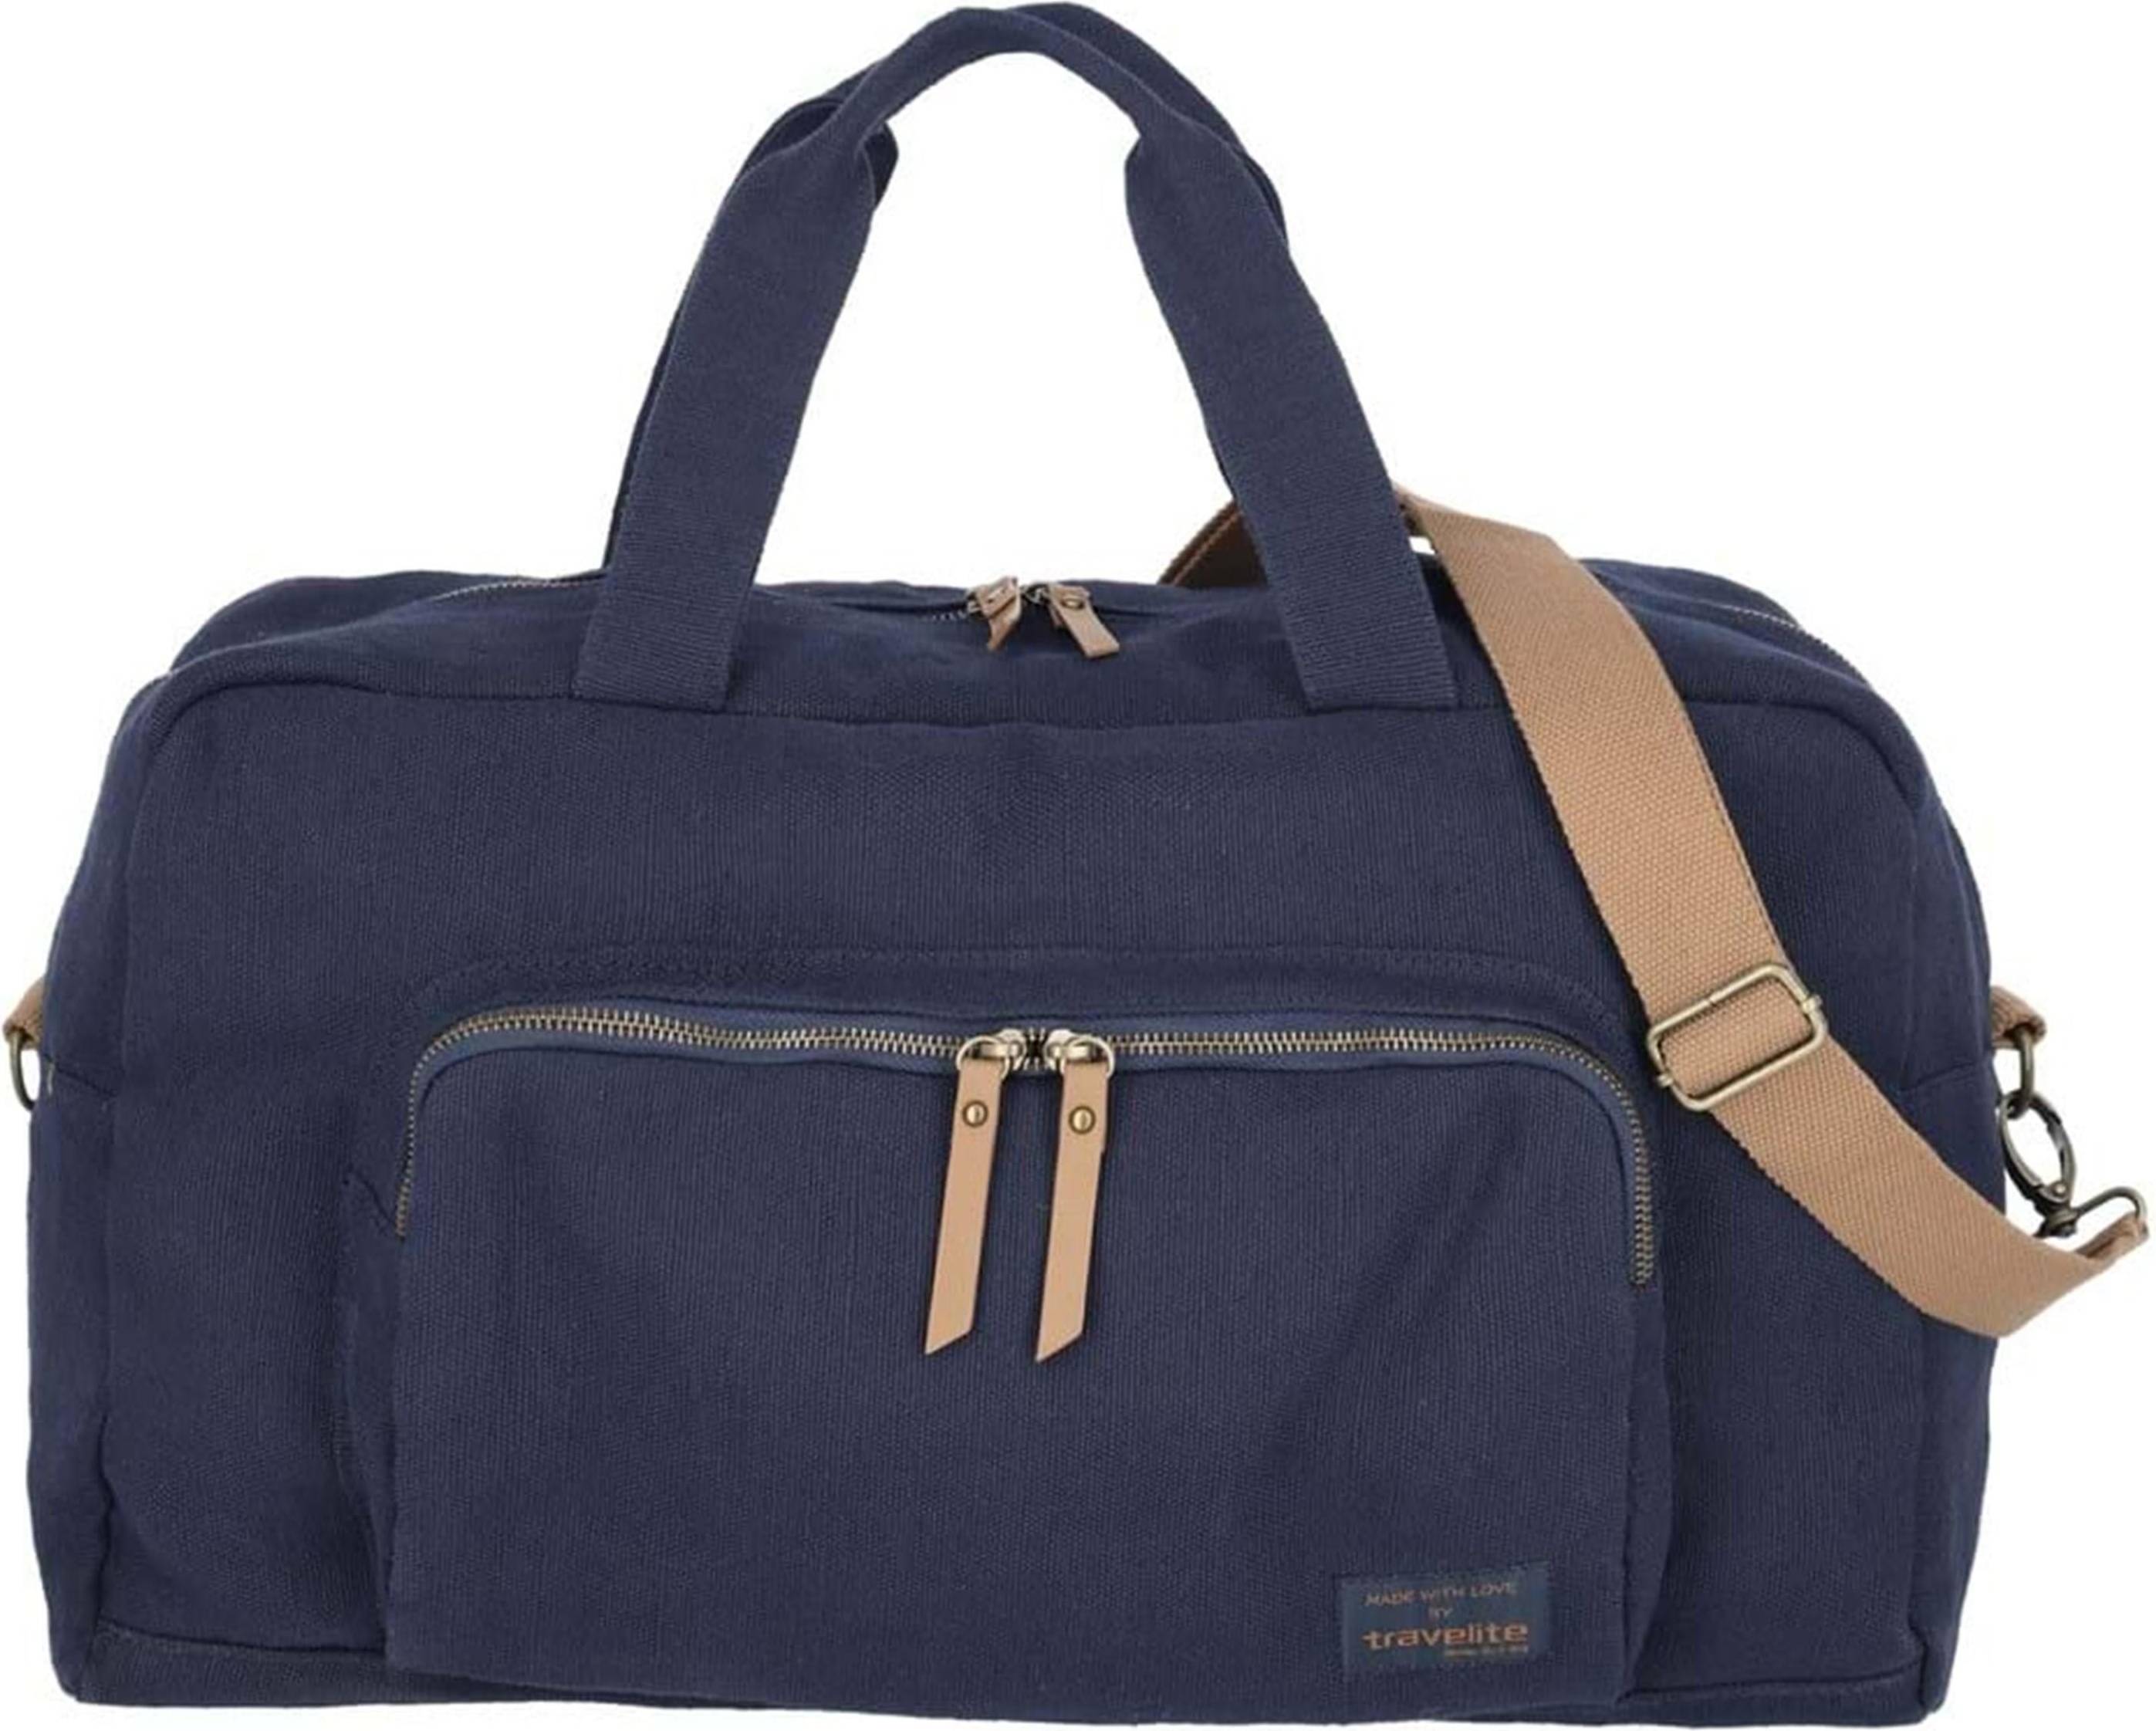 Travelite Weekender Bag - Navy • See best price